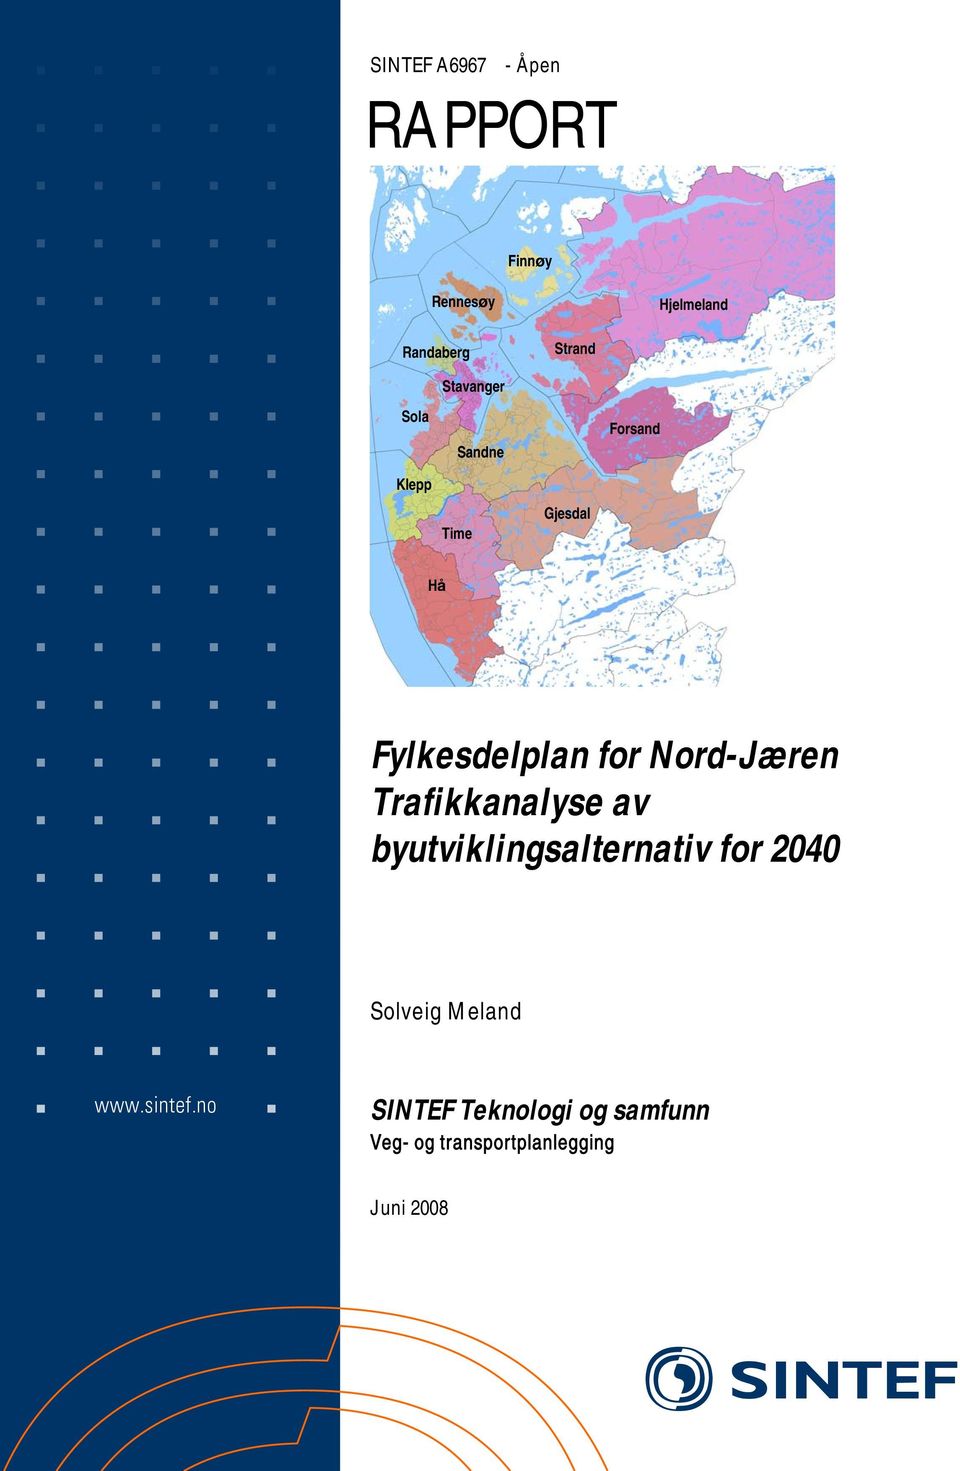 Fylkesdelplan for Nord-Jæren Trafikkanalyse av byutviklingsalternativ